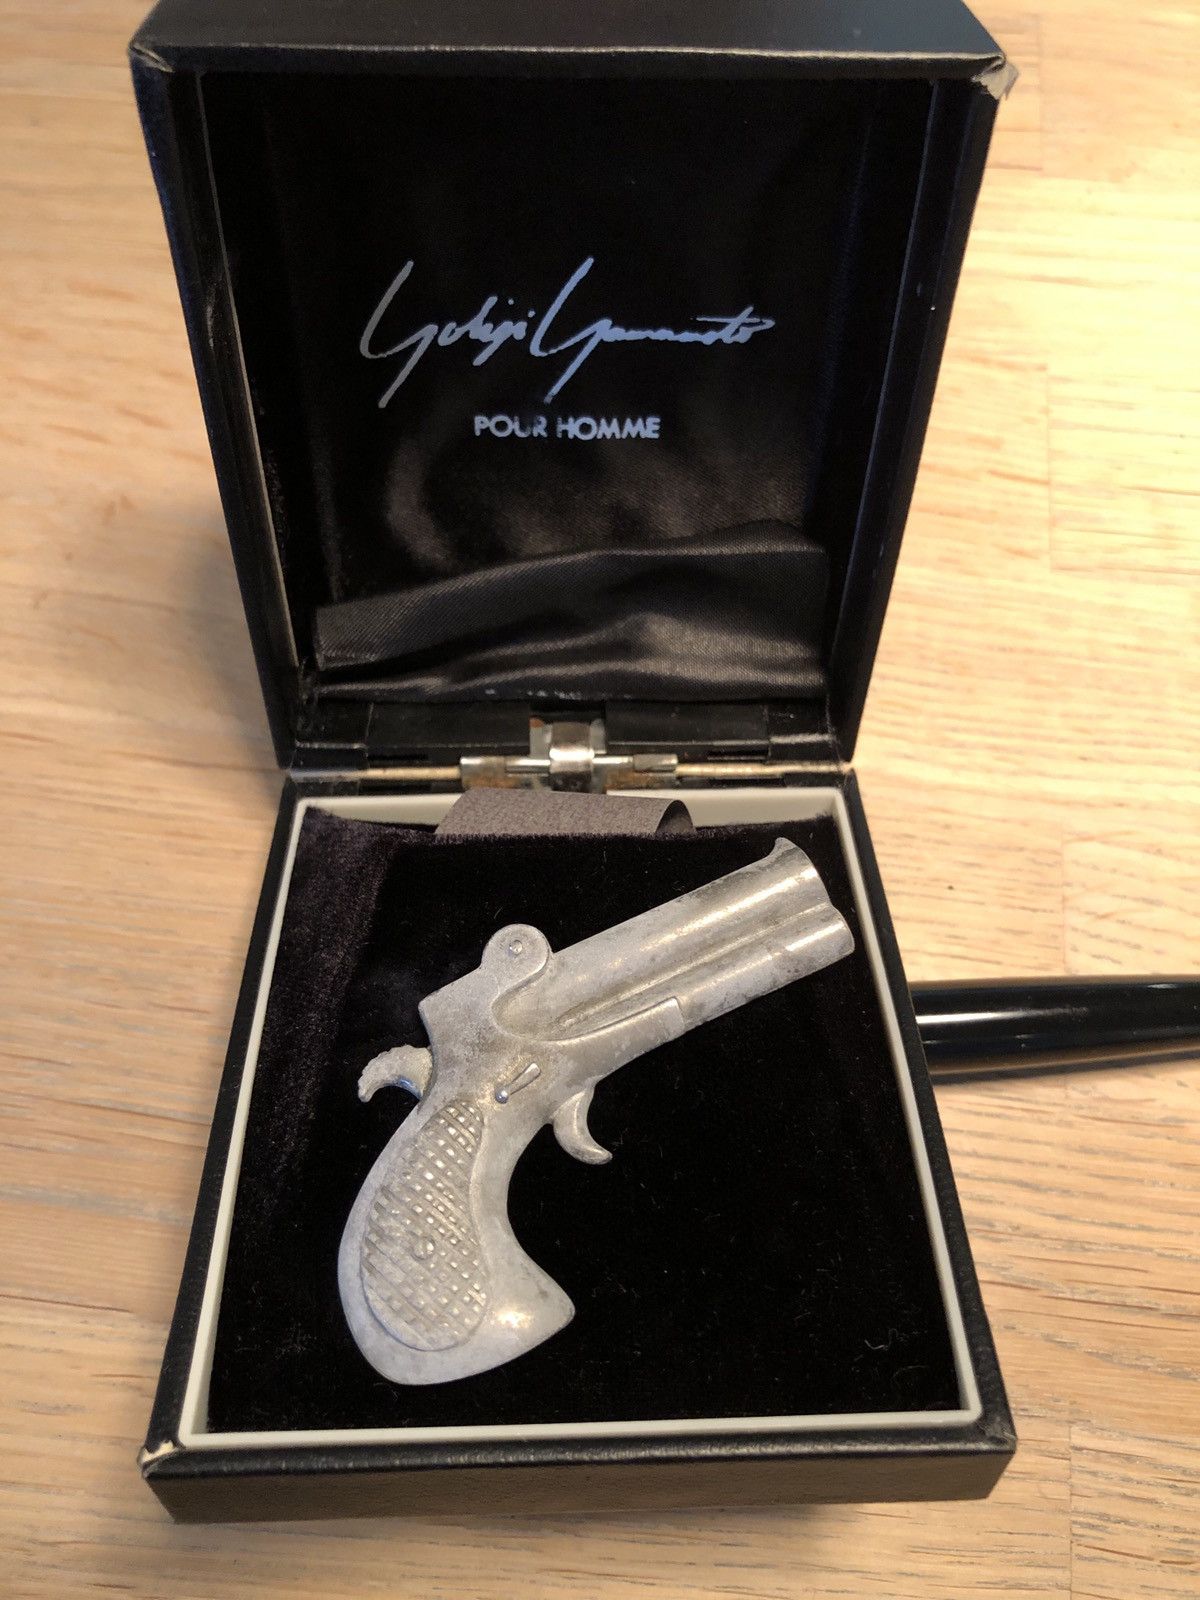 Yohji Yamamoto Yohji Yamamoto Gun Pin | Grailed